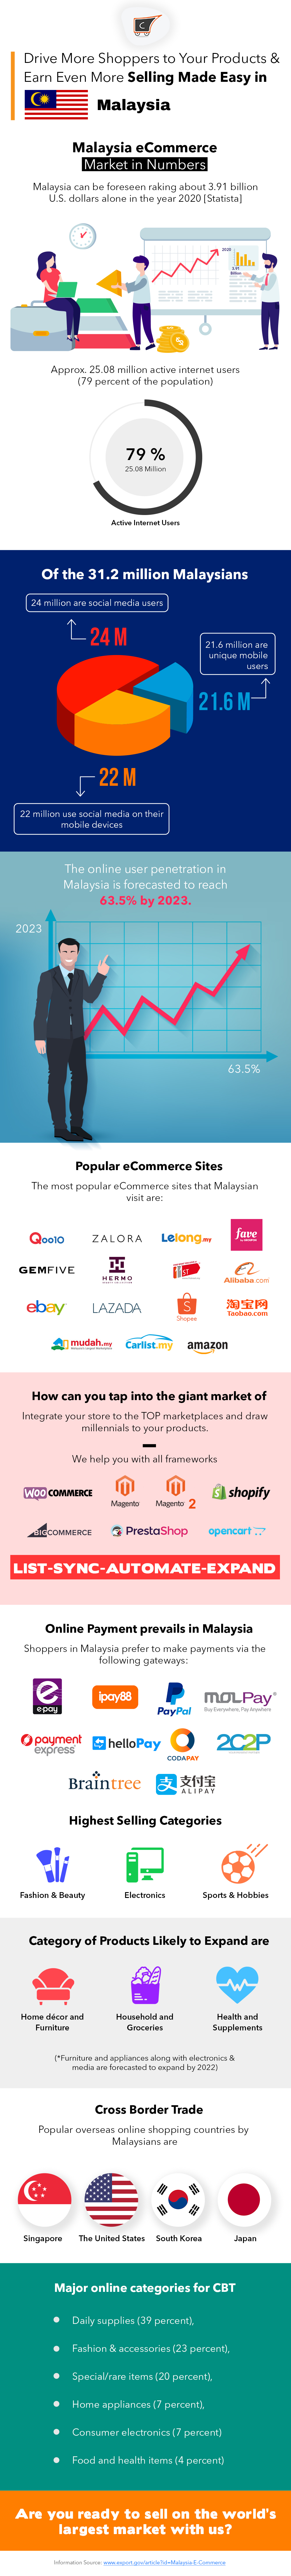 malaysia ecommerce landscape